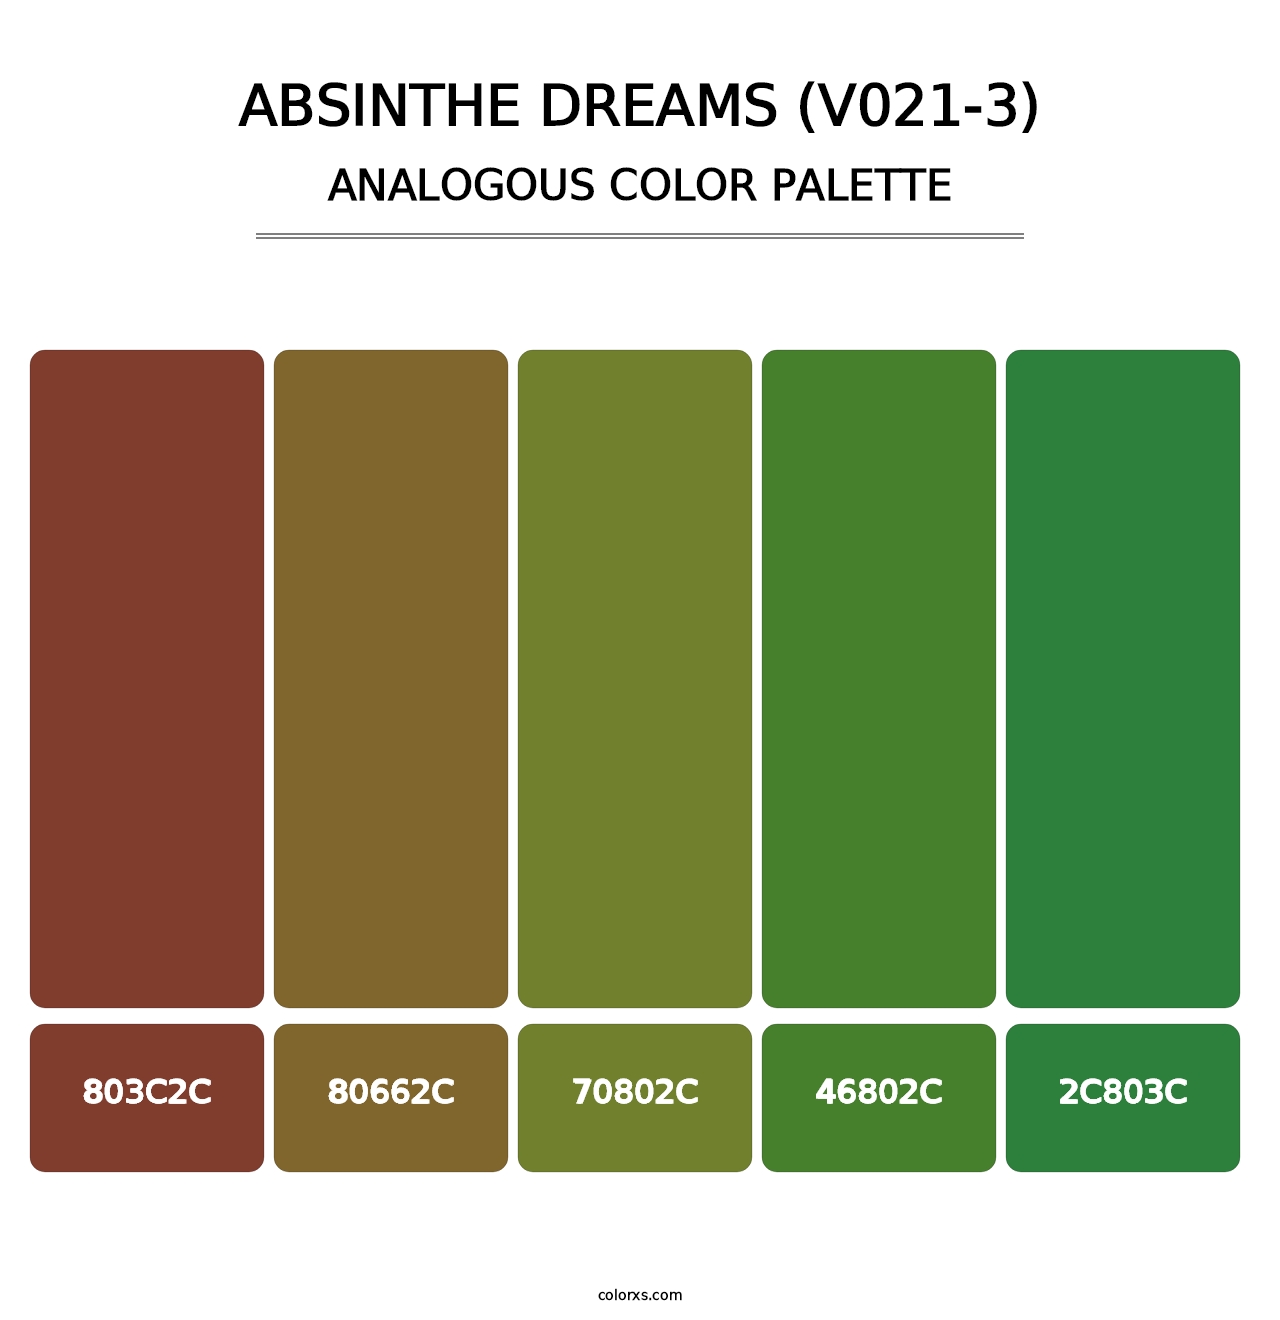 Absinthe Dreams (V021-3) - Analogous Color Palette